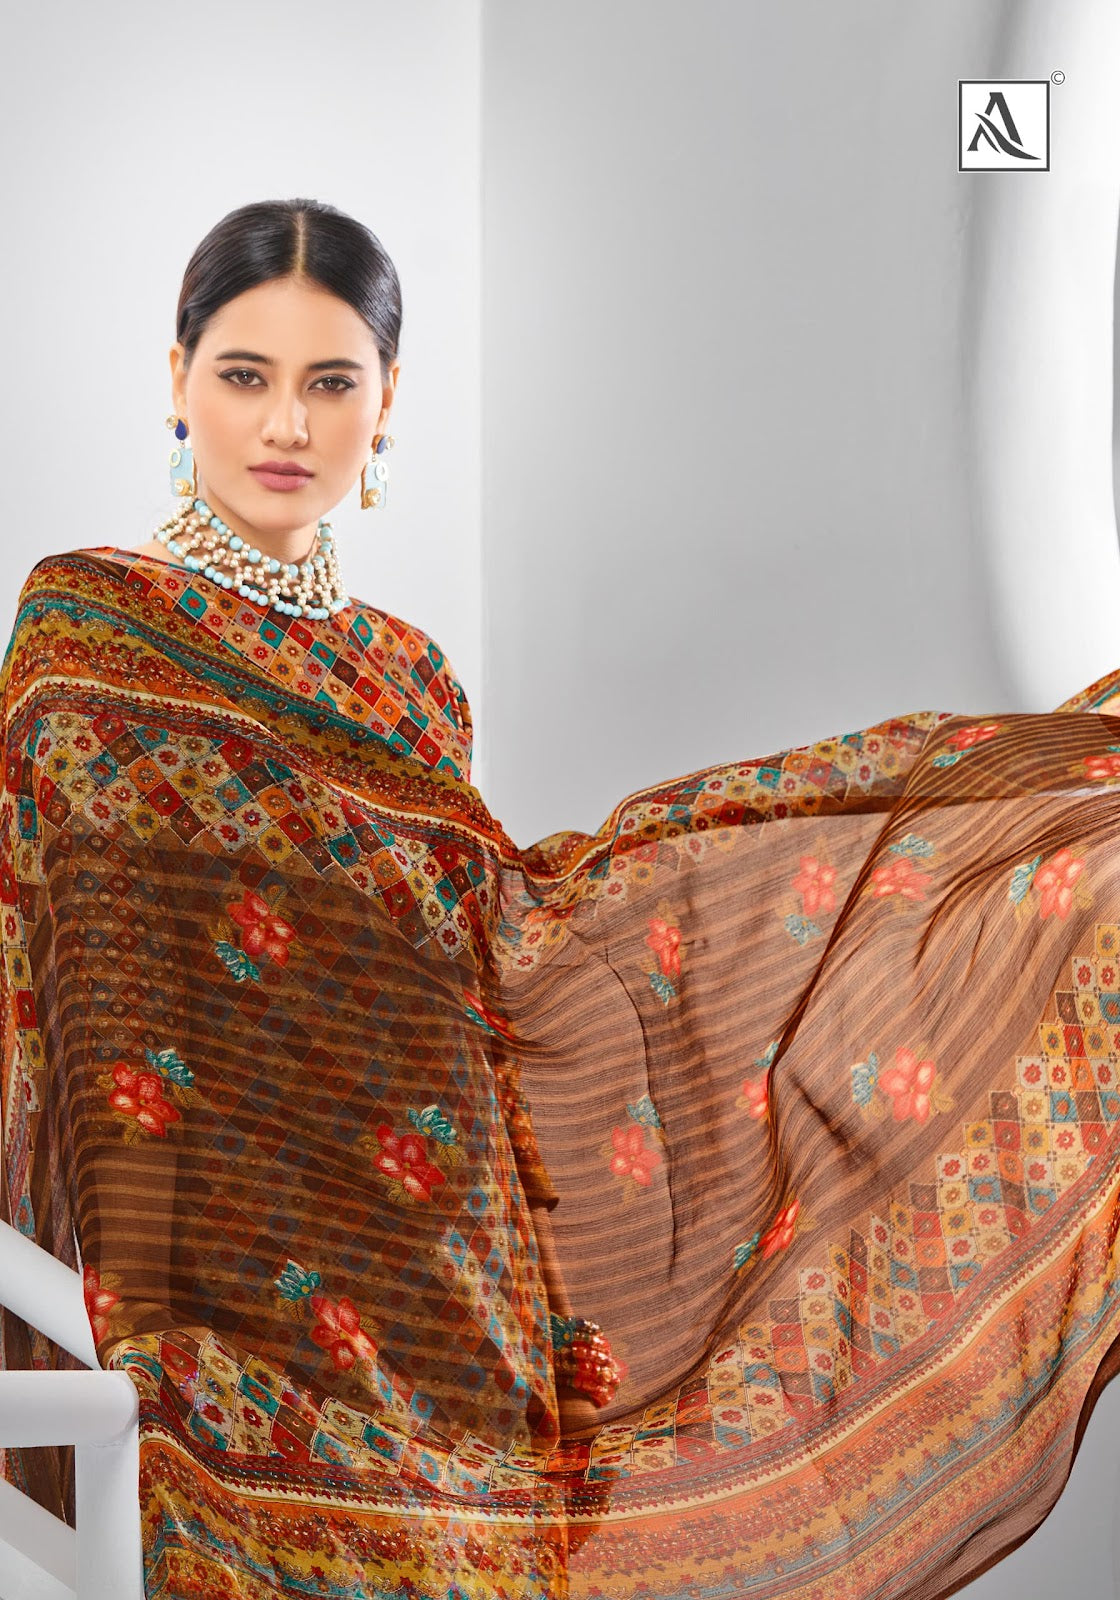 Sanam Alok Pure Jaam Pant Style Suits Wholesaler Gujarat